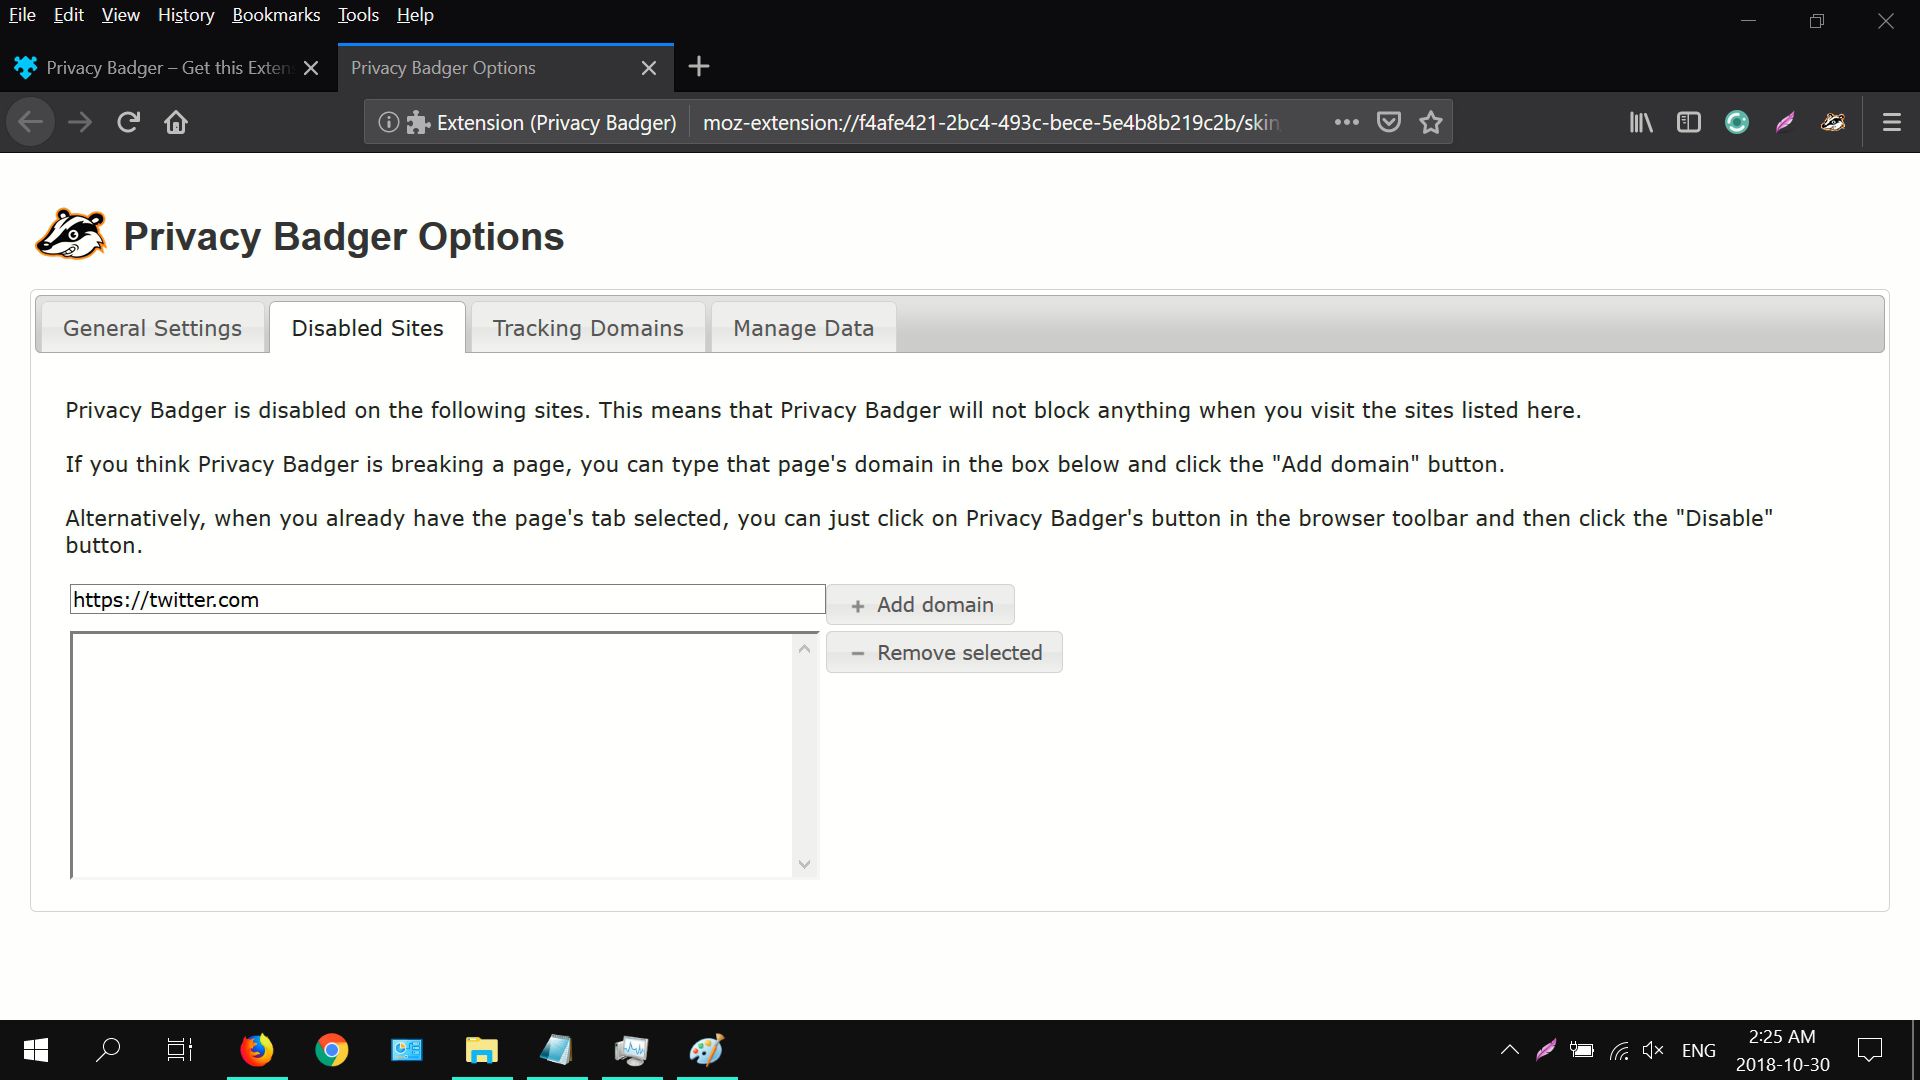 Captura de tela das opções do Privacy Badger